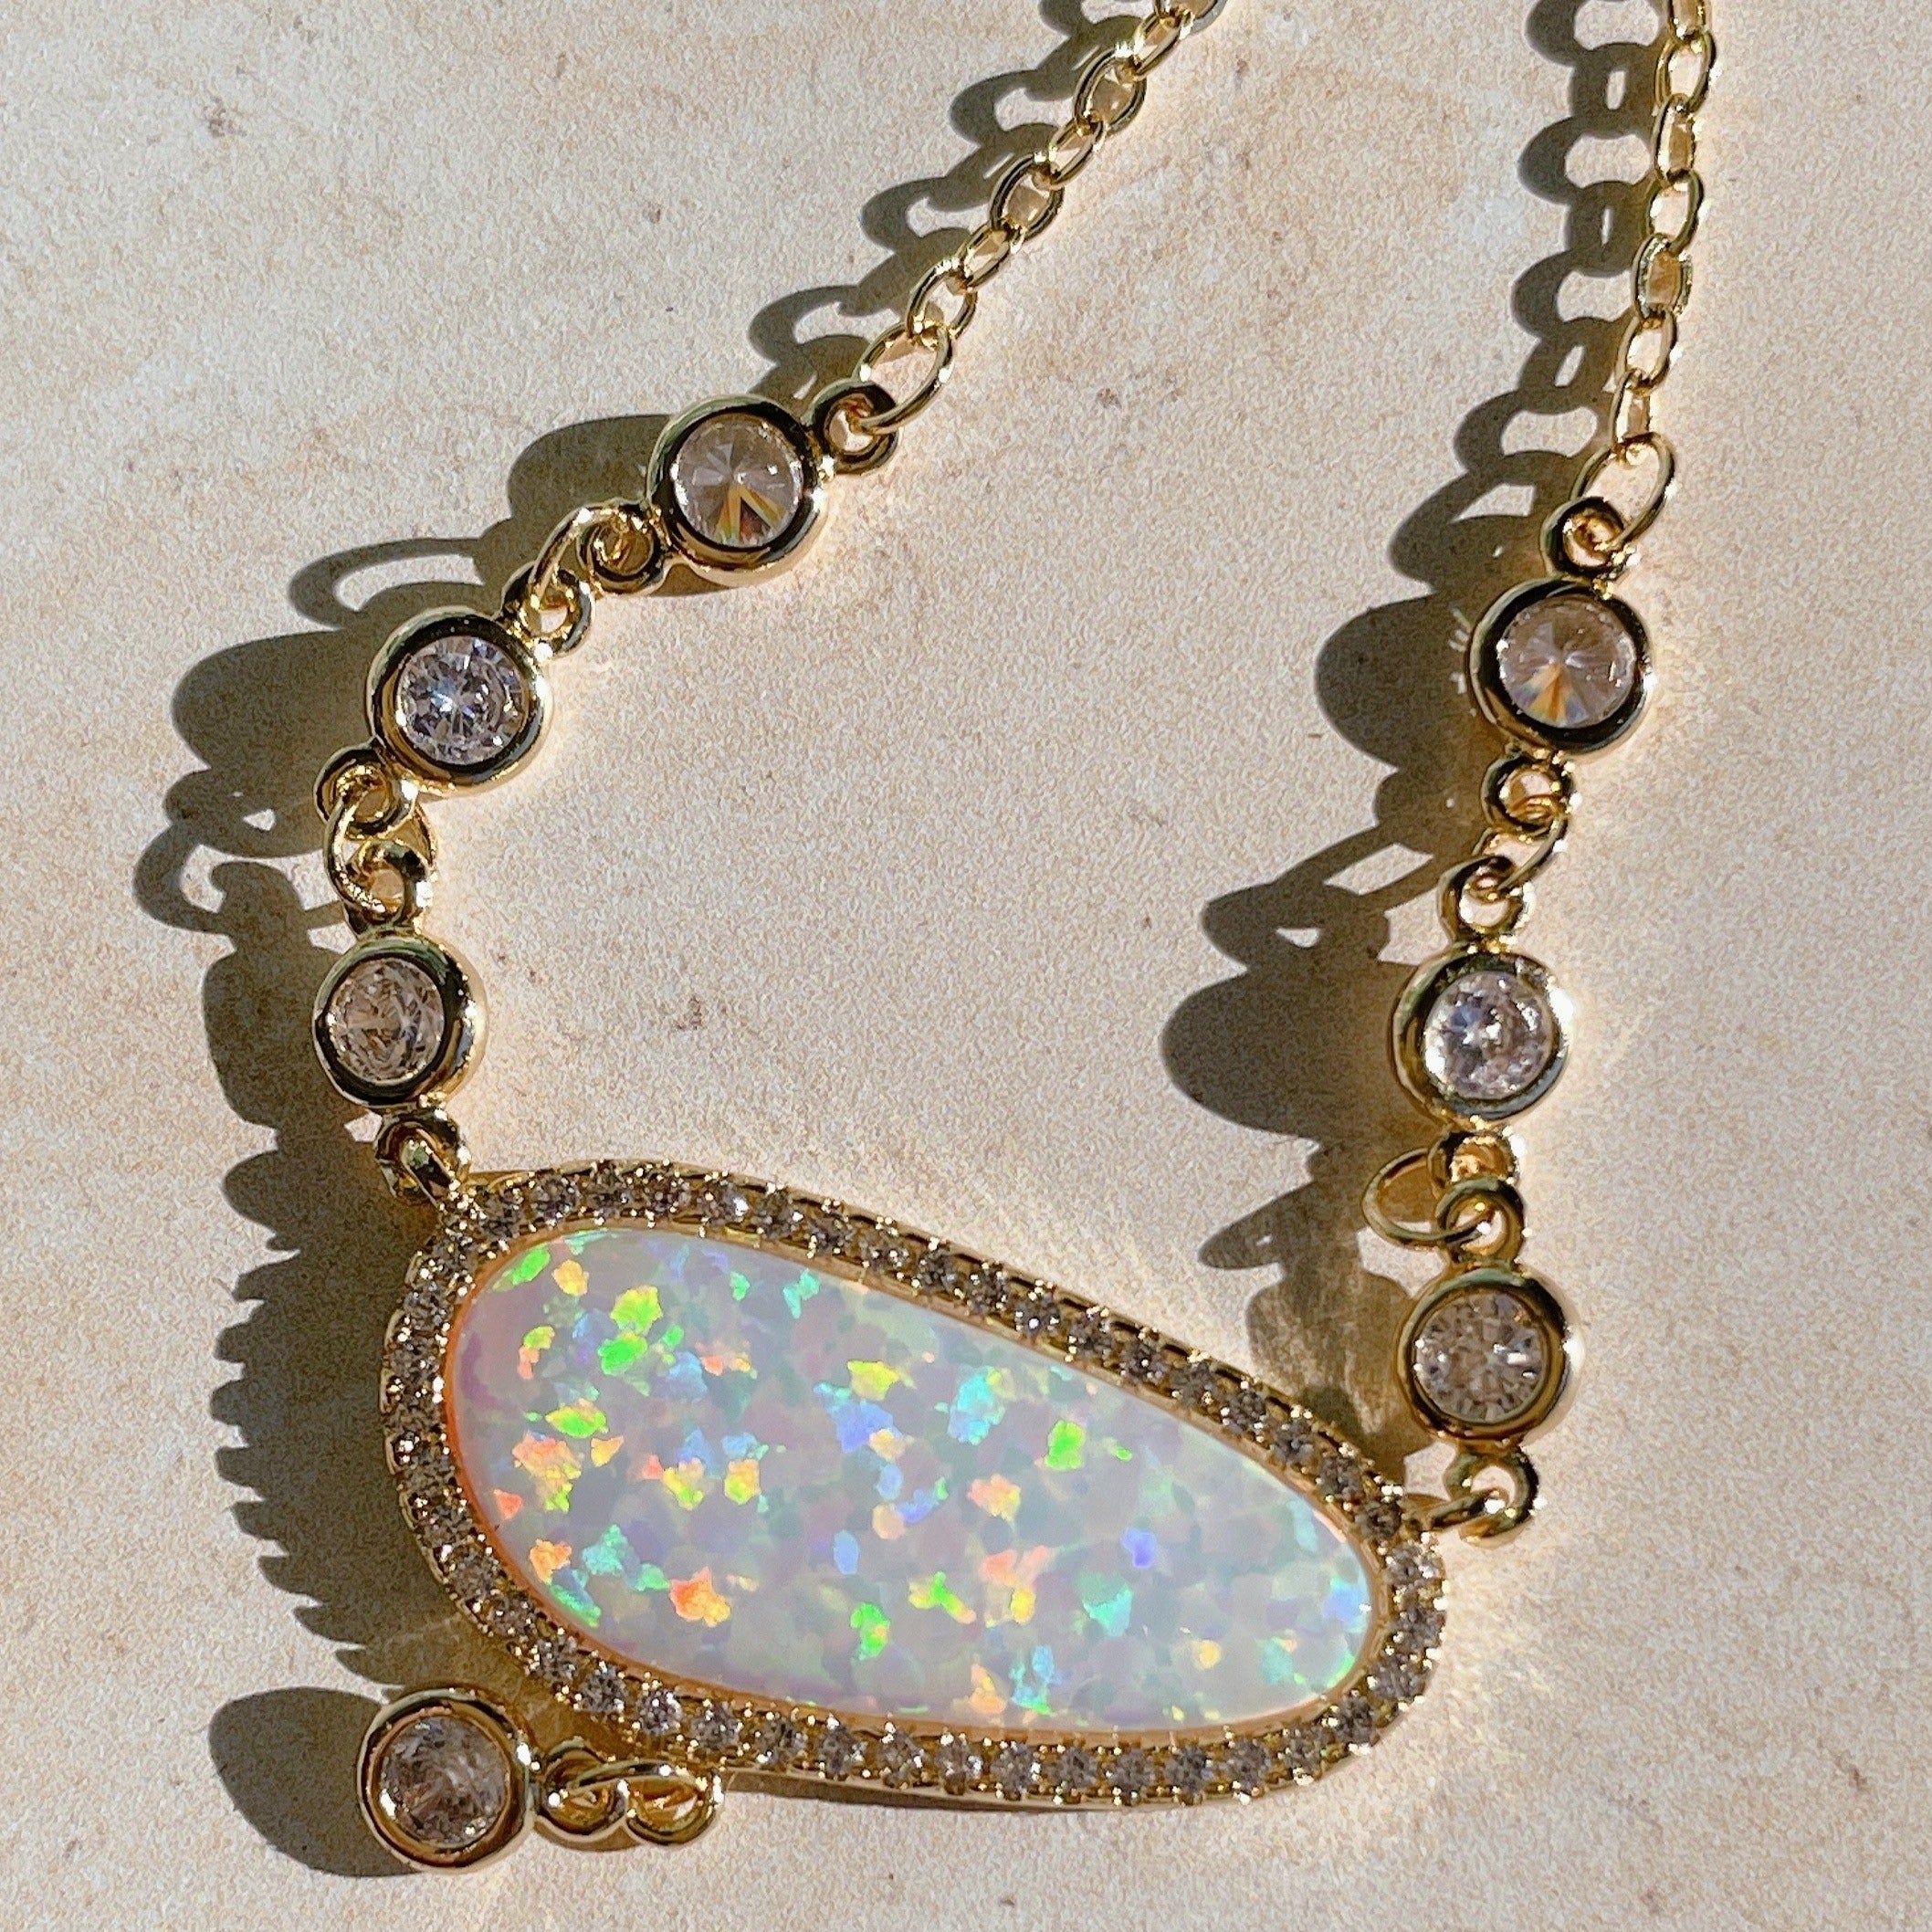 GRACE Fire Opal & Diamond Necklace | Gold